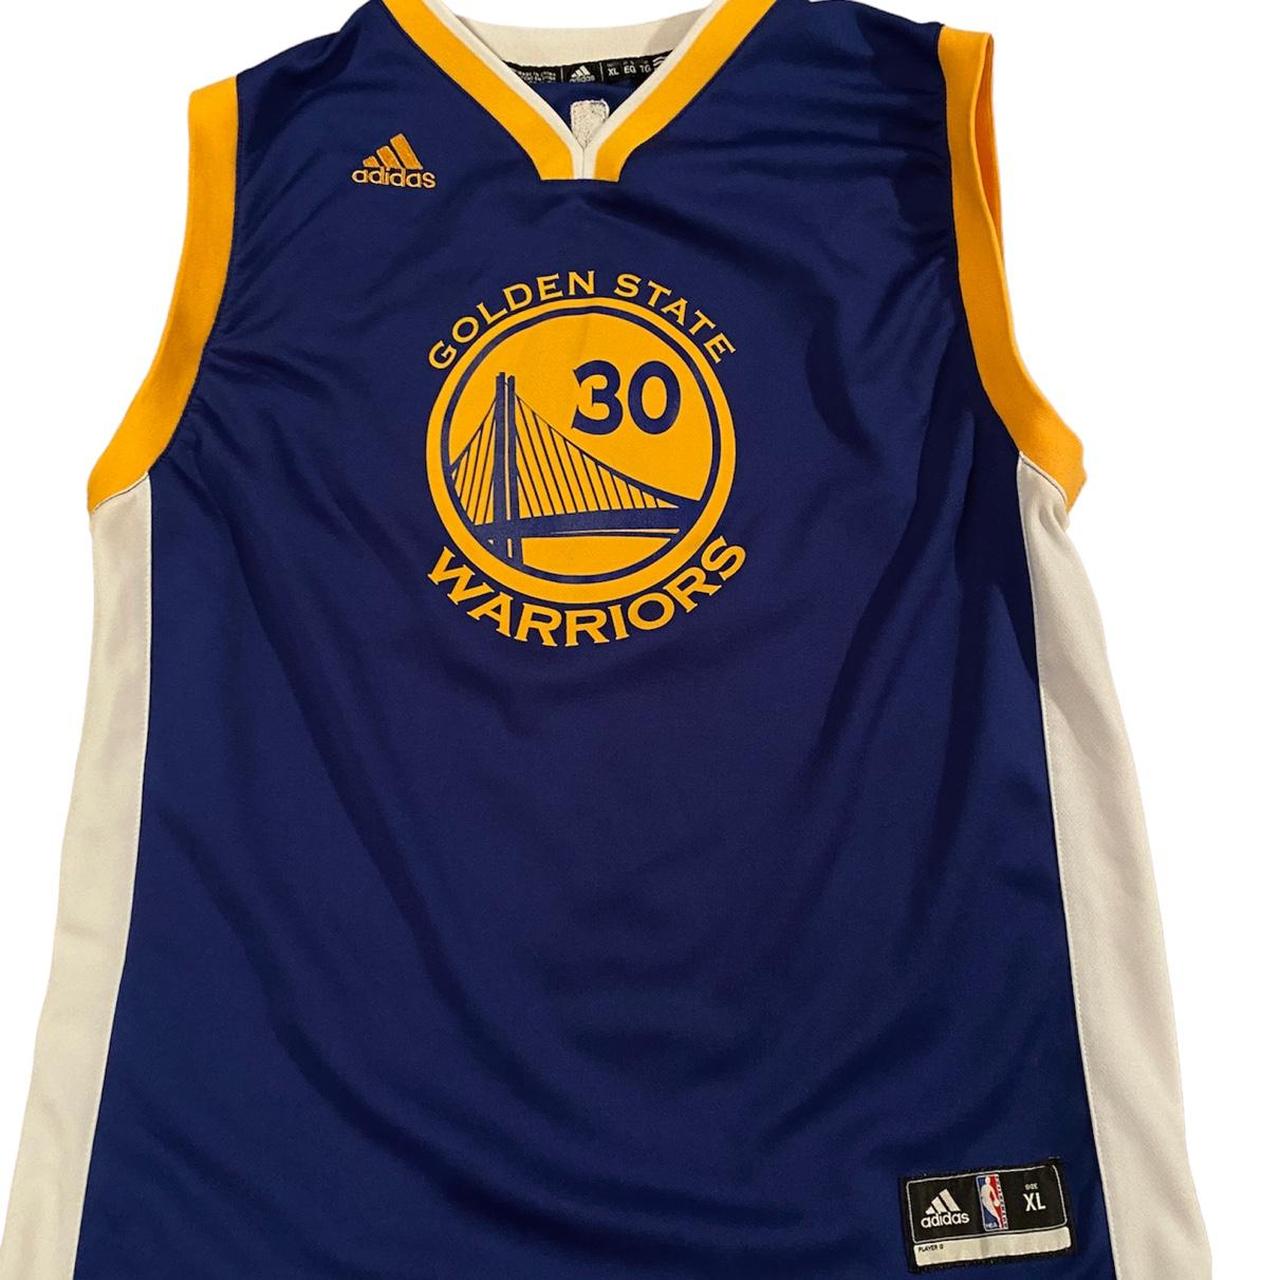 Steph Curry Golden State Warriors Adidas Swingman Jersey Men's XL